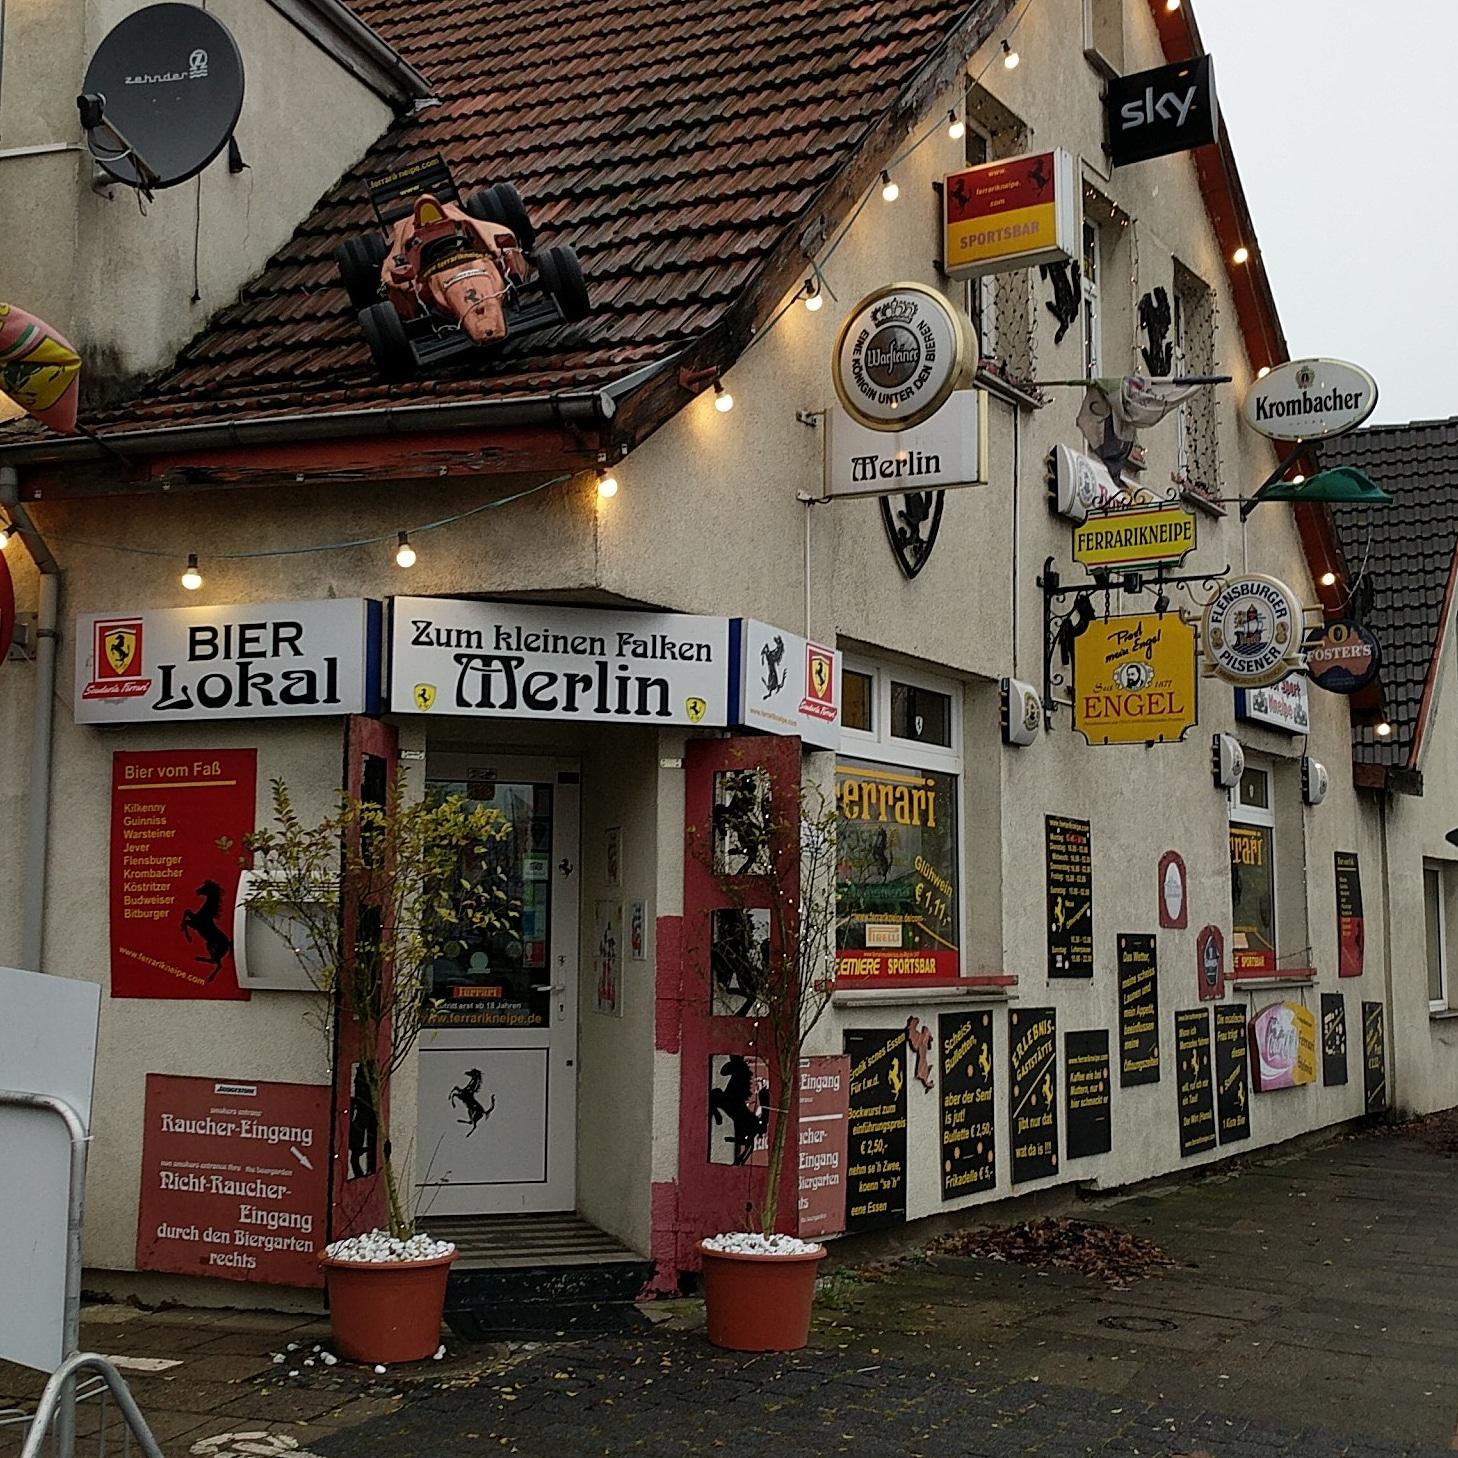 Restaurant "Ferrarikneipe" in Bremerhaven